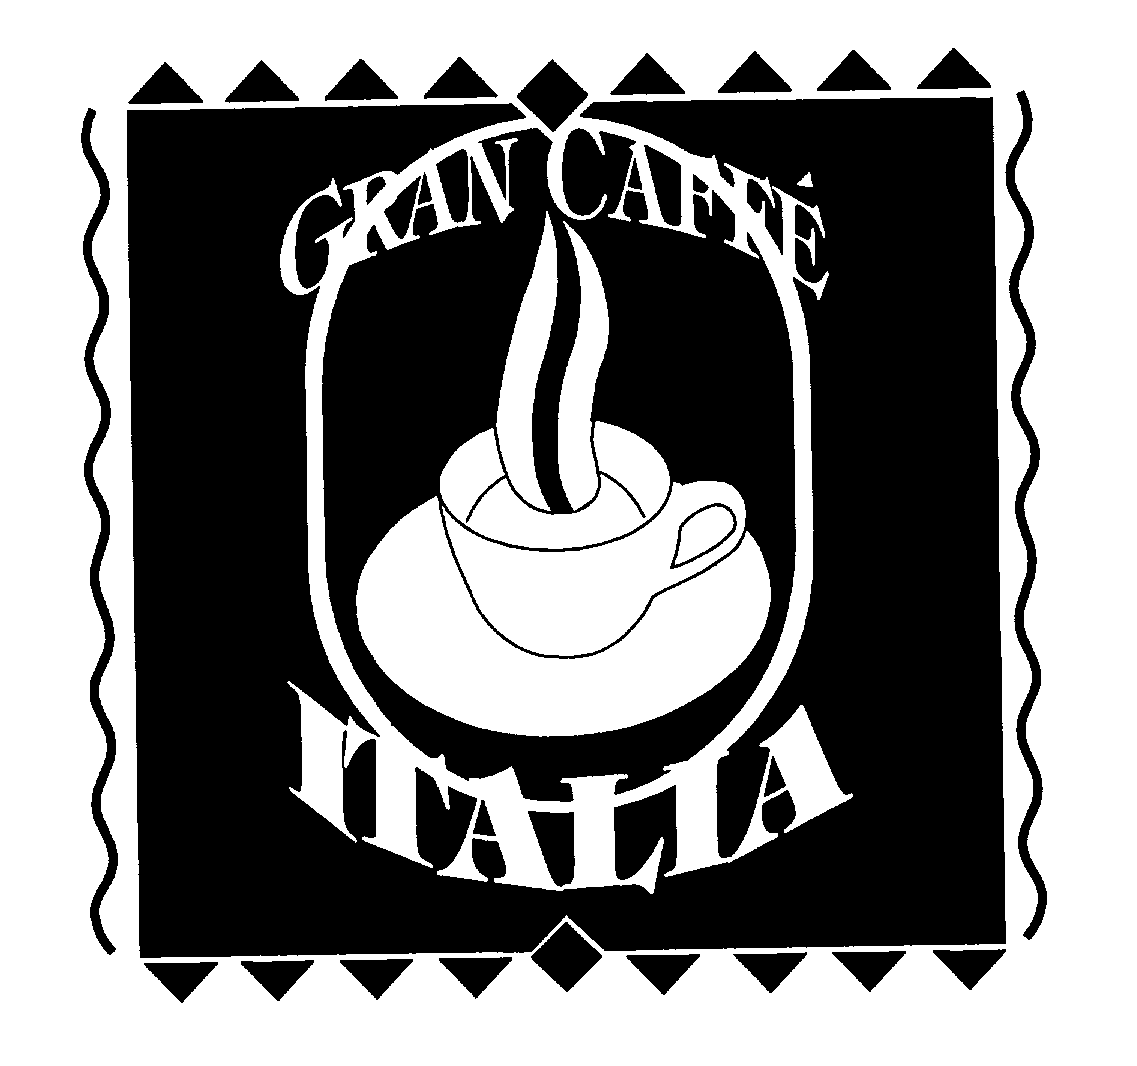  GRAN CAFFE' ITALIA